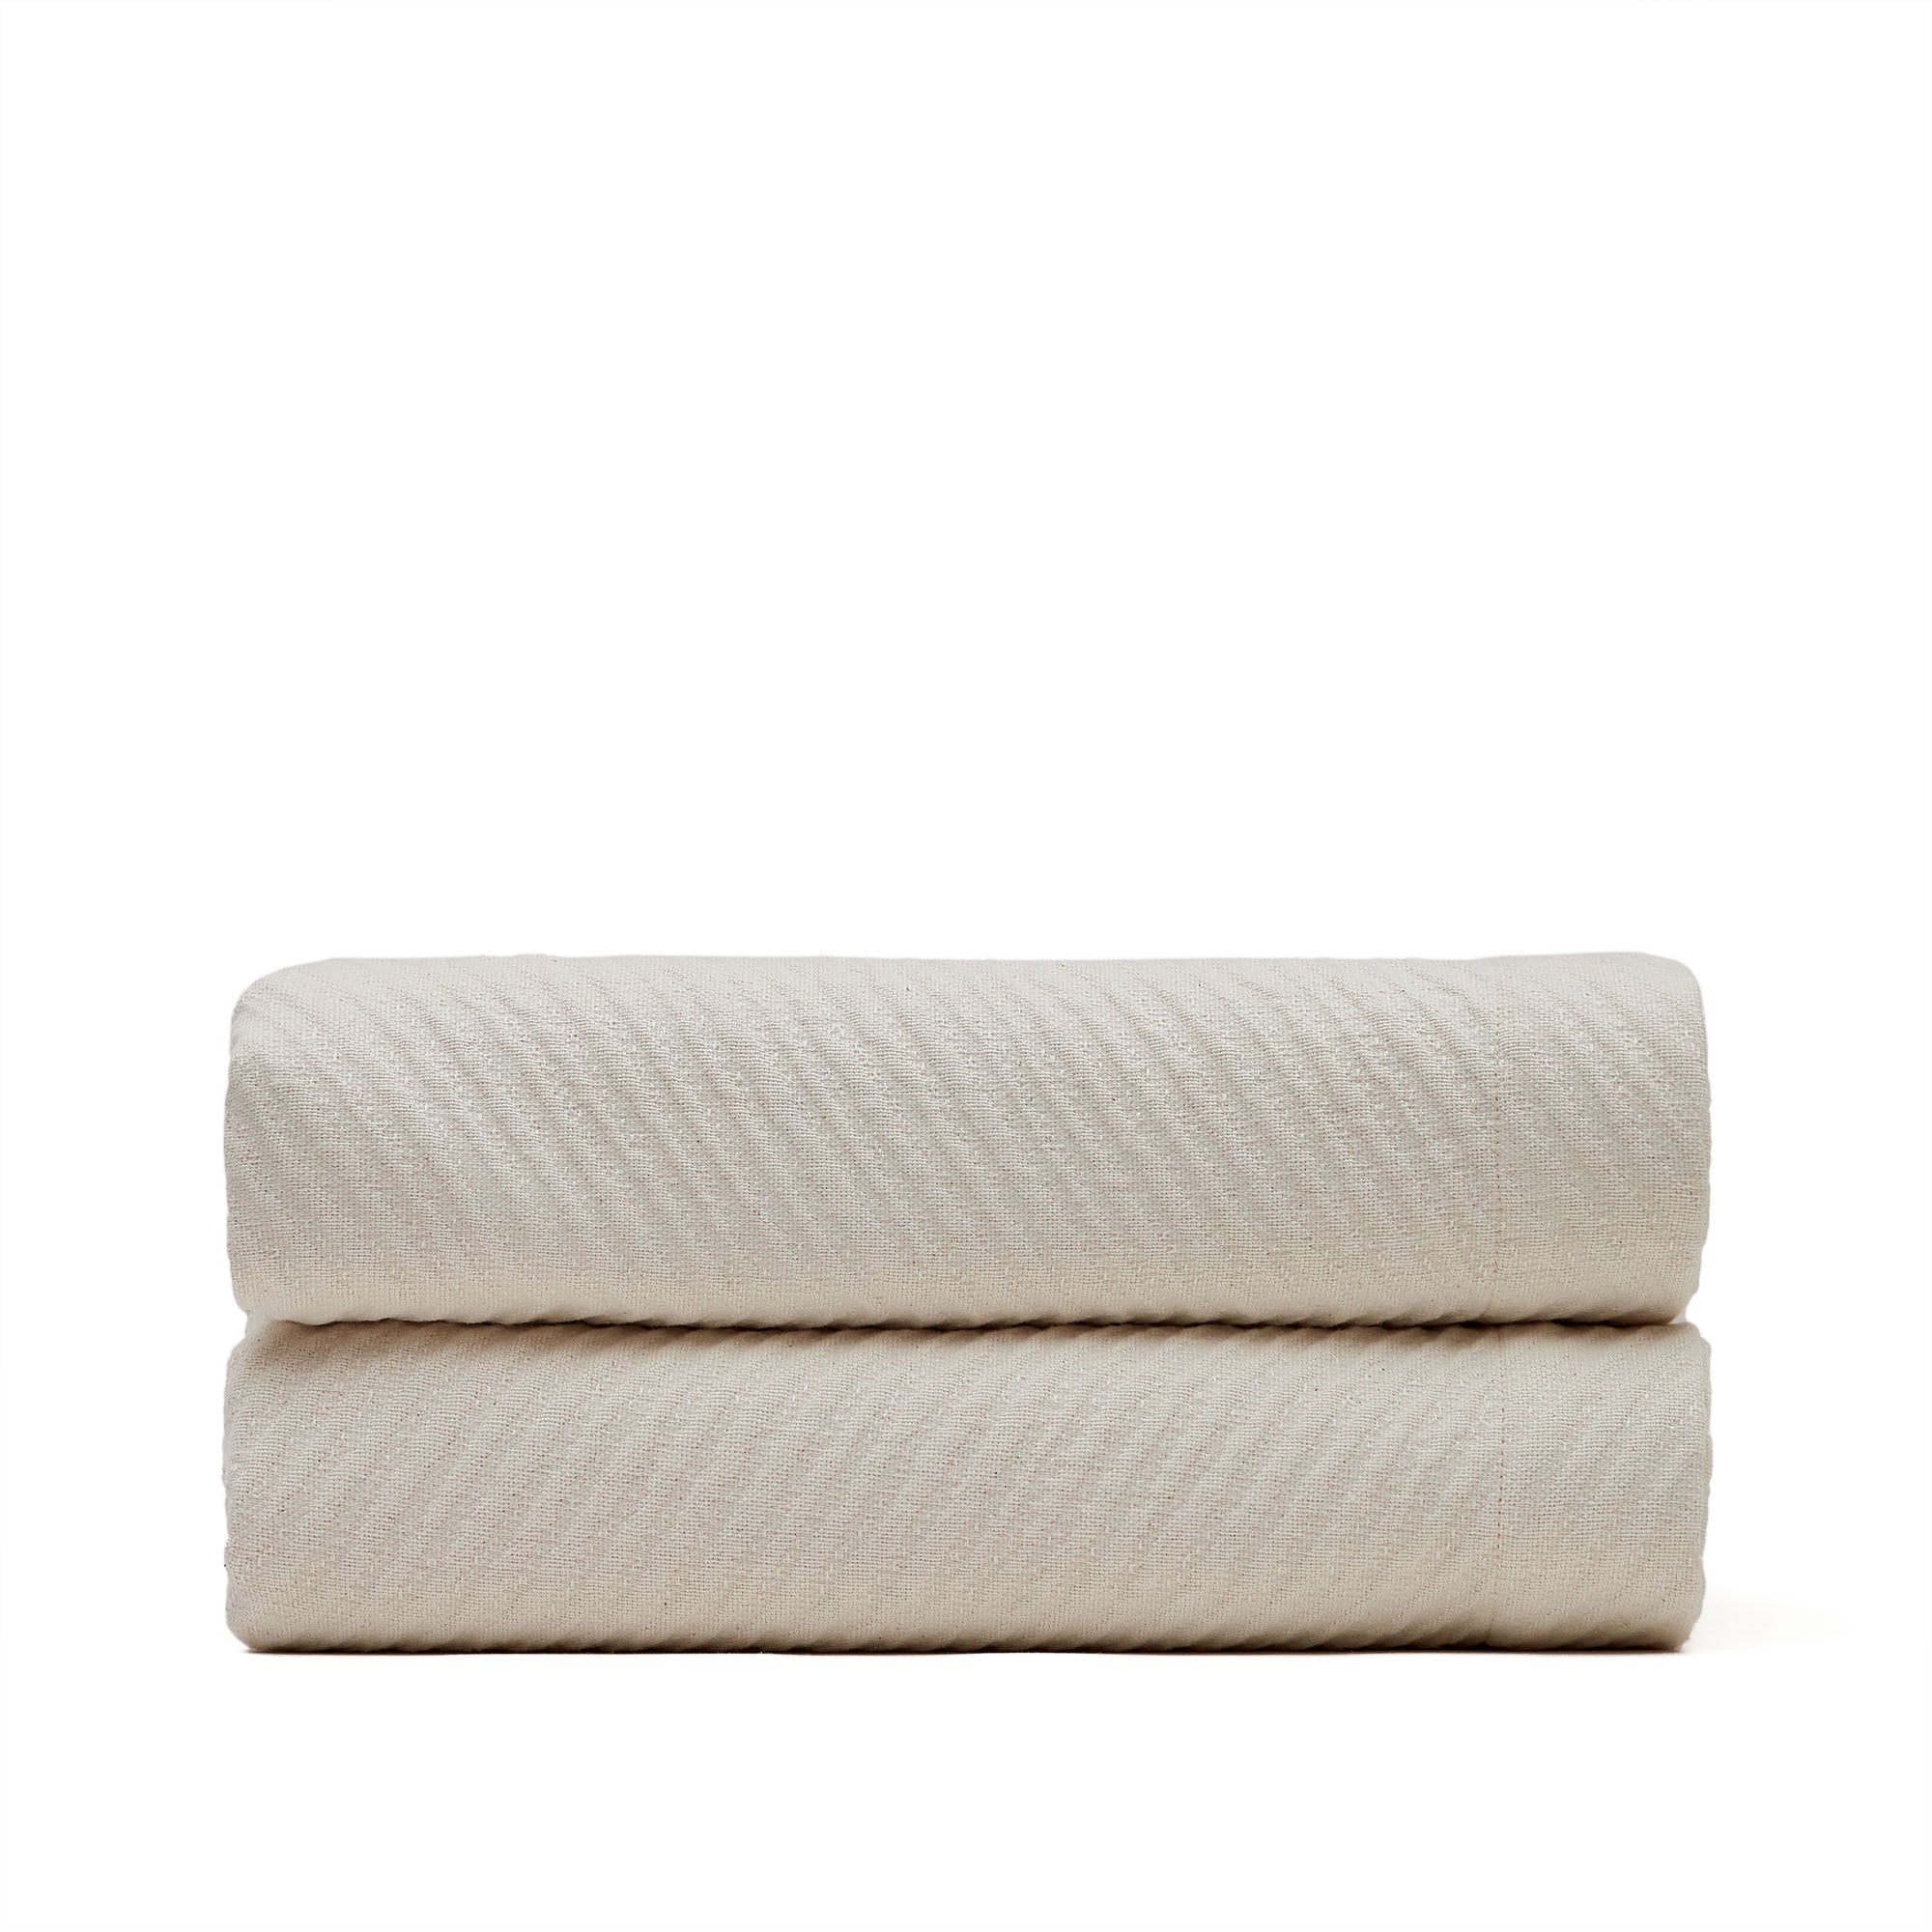 Bedar quilt in beige cotton for 160/180 cm bed